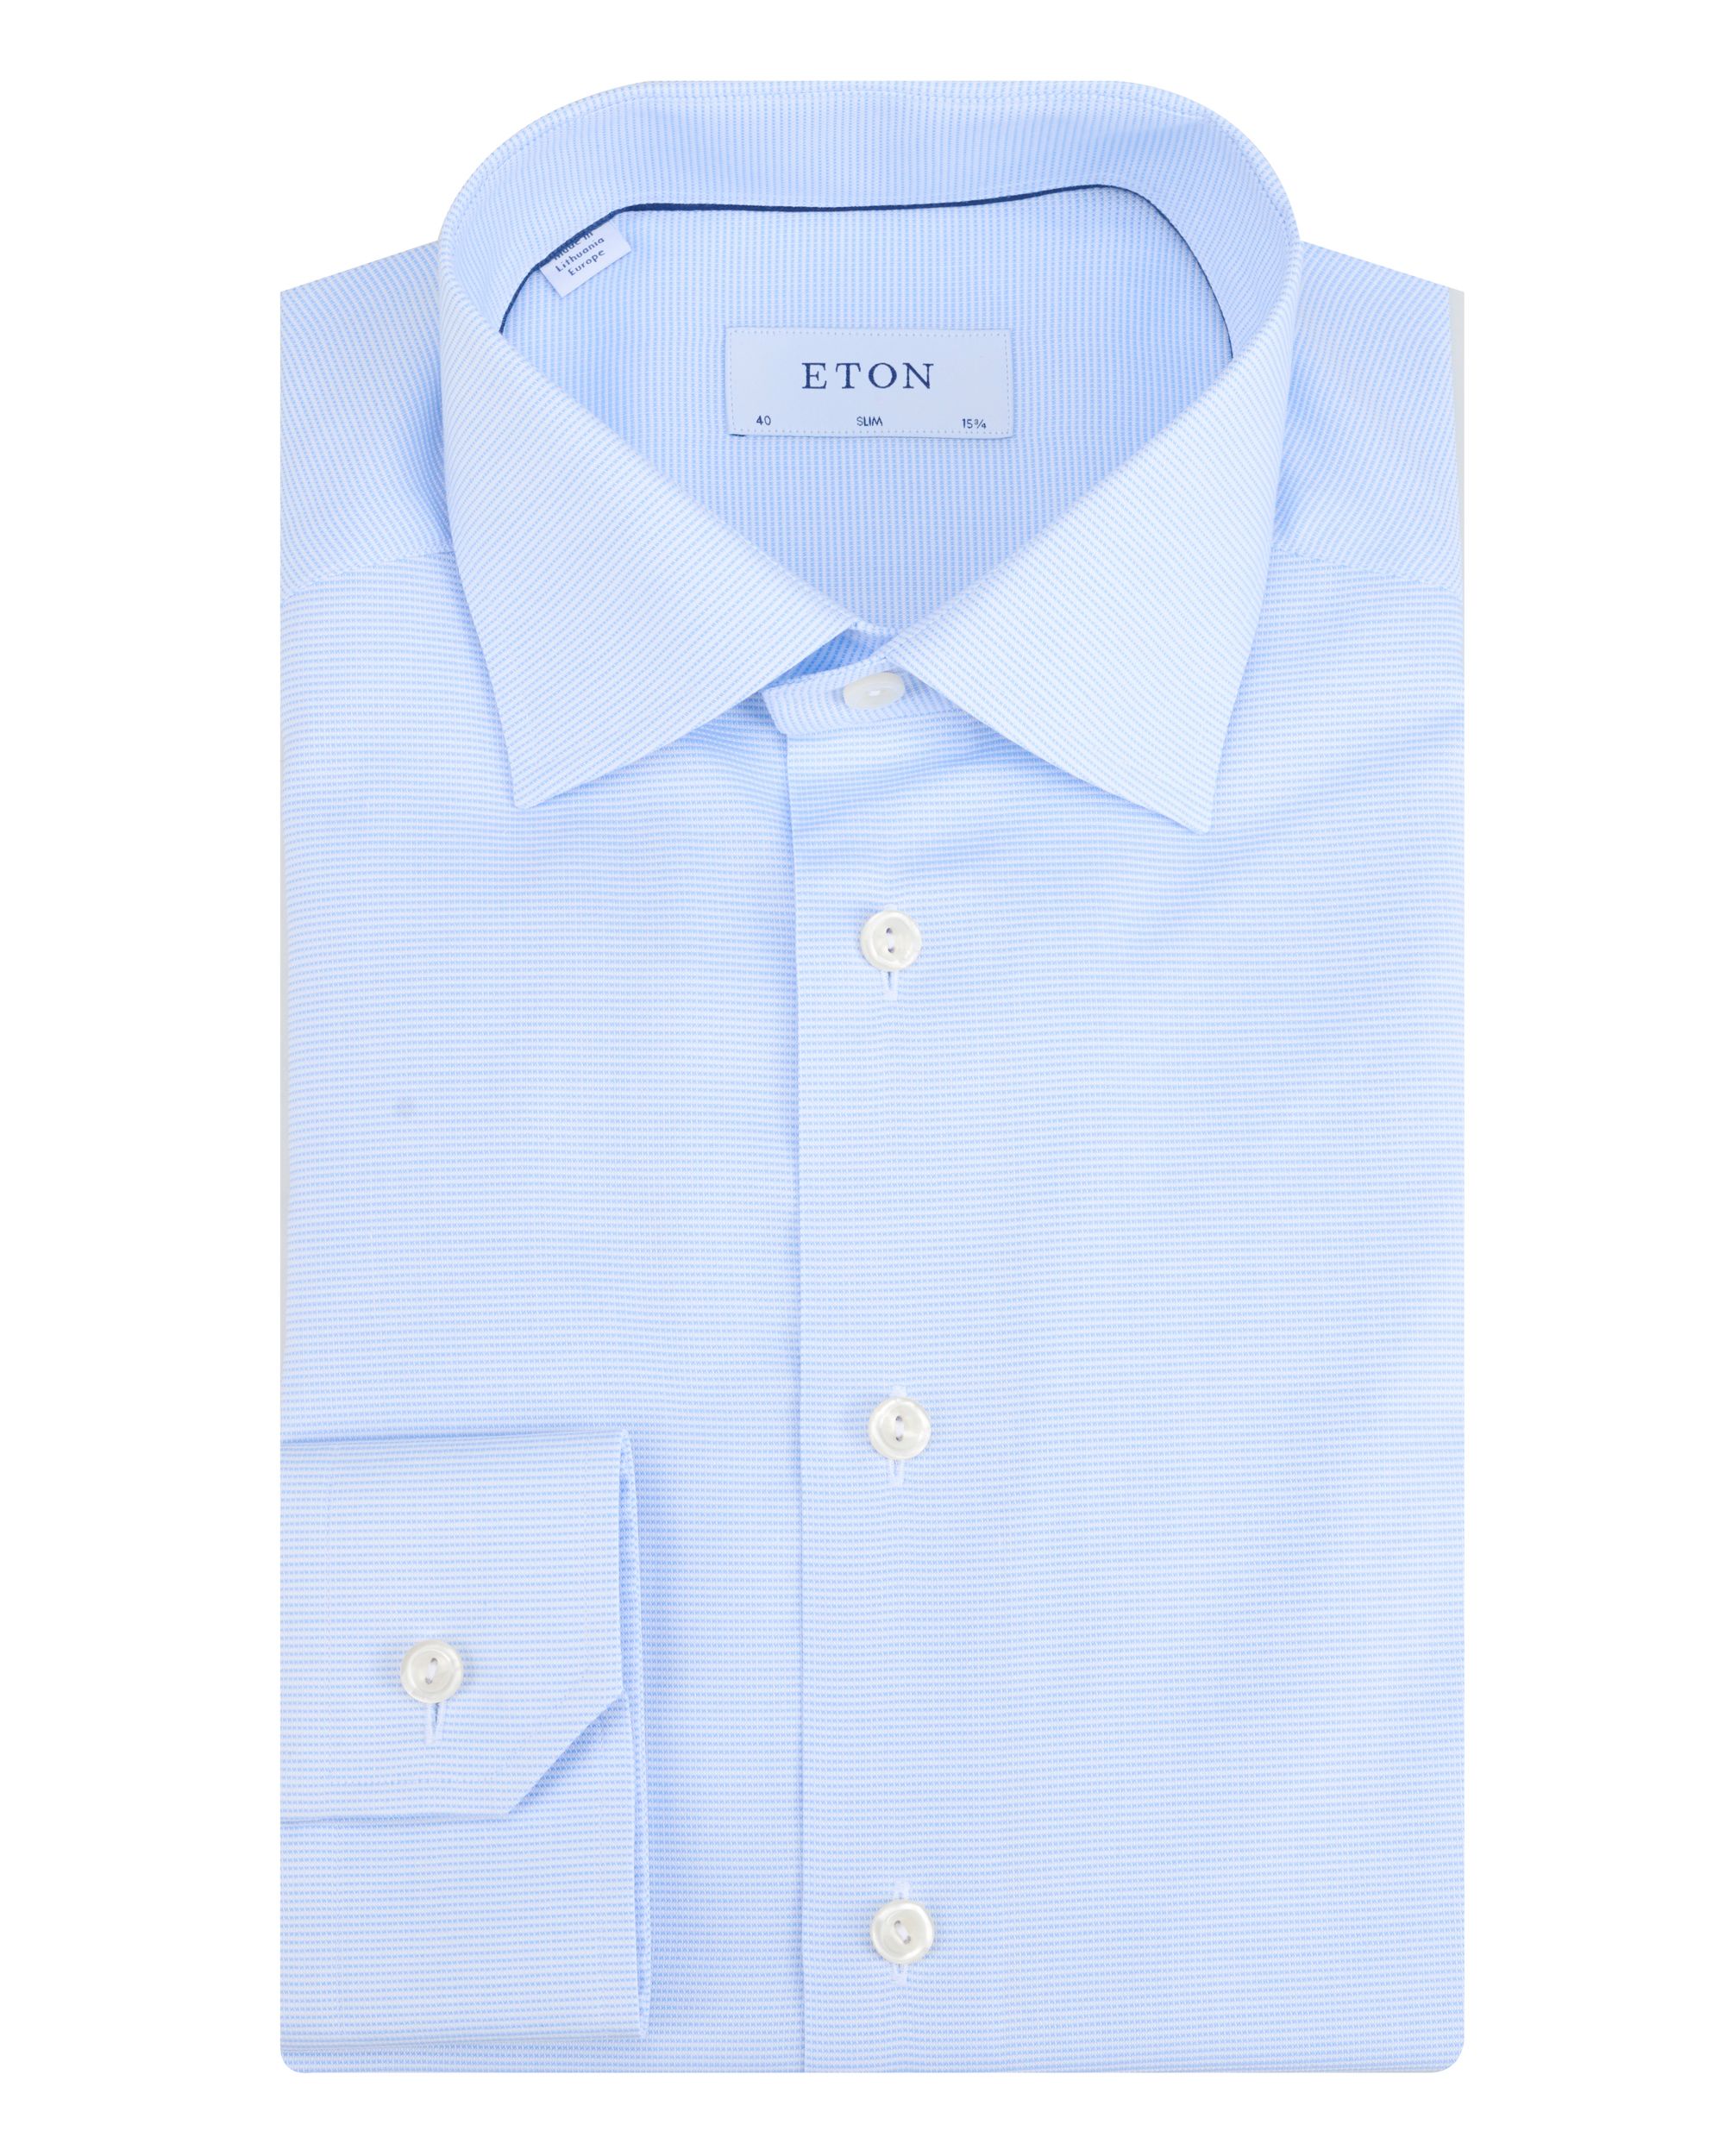 ETON Overhemd LM Blauw 091978-001-41